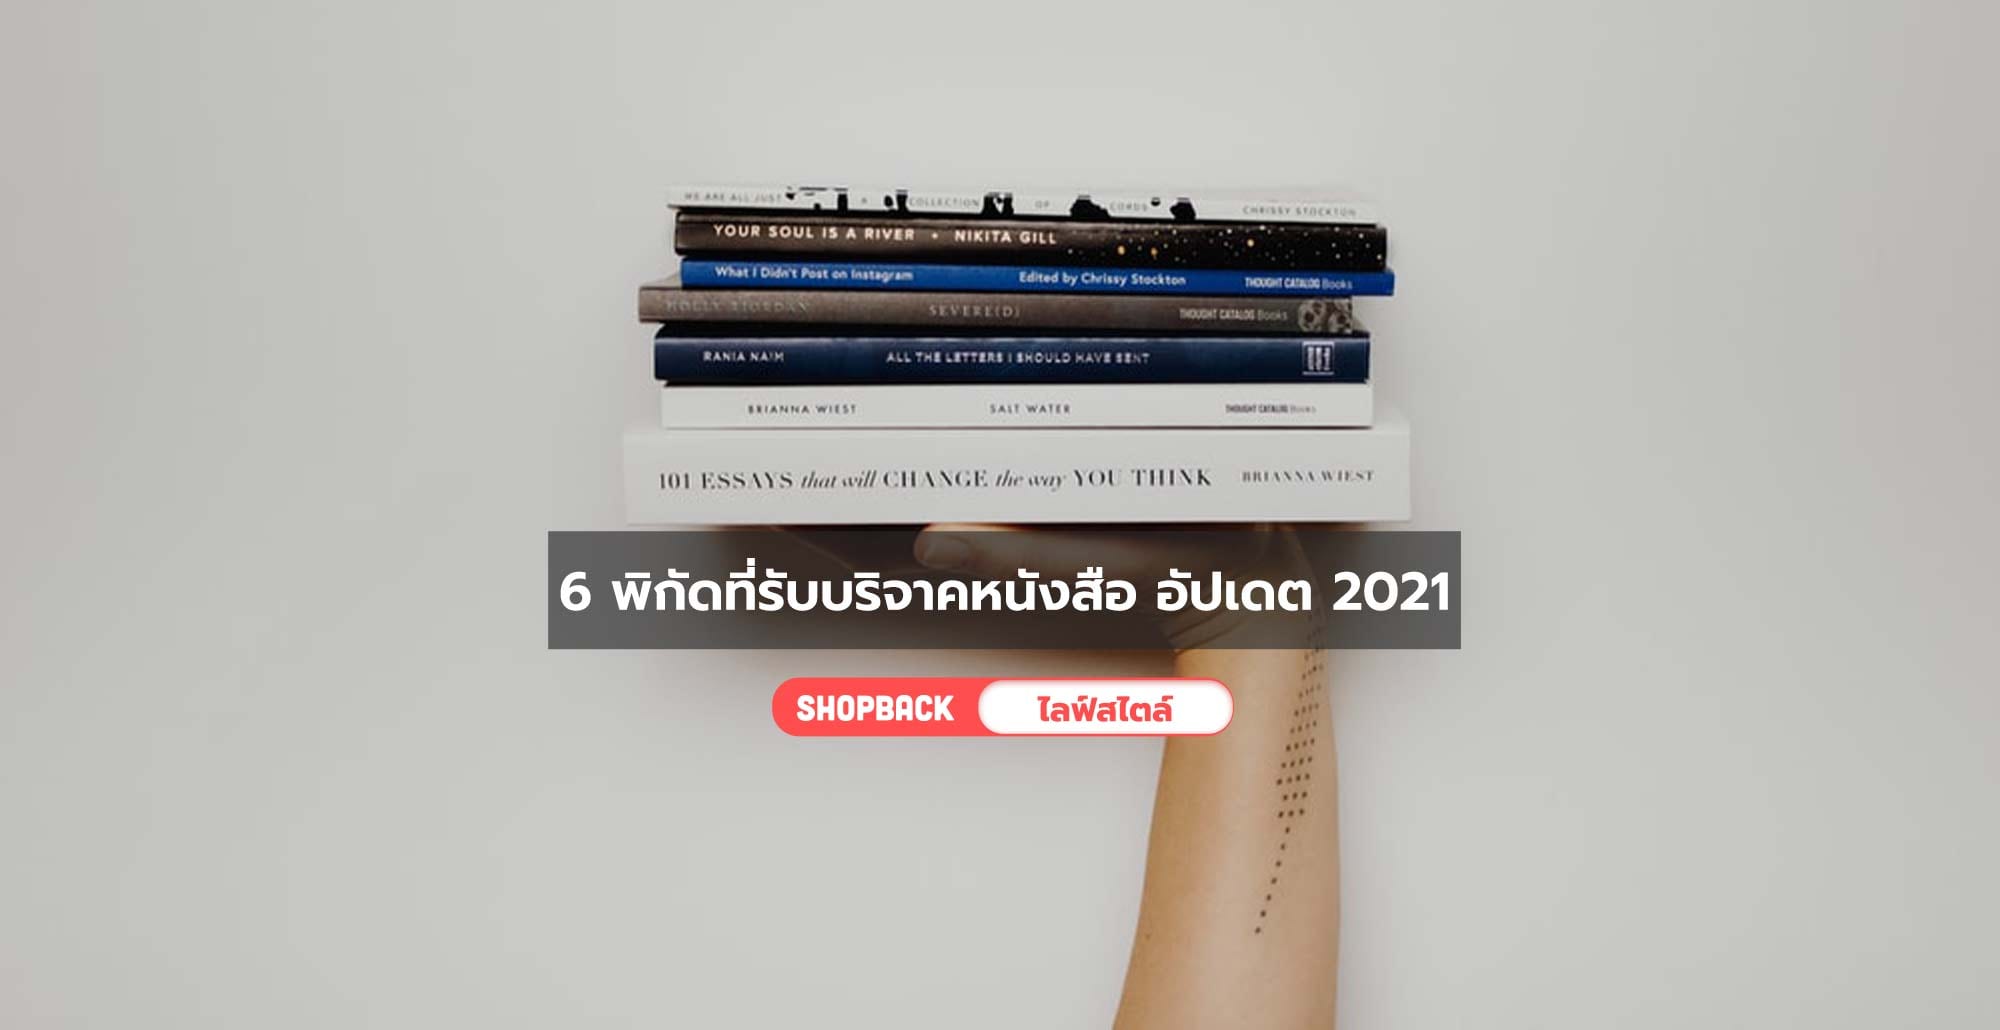 6 พิกัดที่รับบริจาคหนังสือ อัปเดต 2021 ปีใหม่นี้มาทำดีให้สุขใจกัน